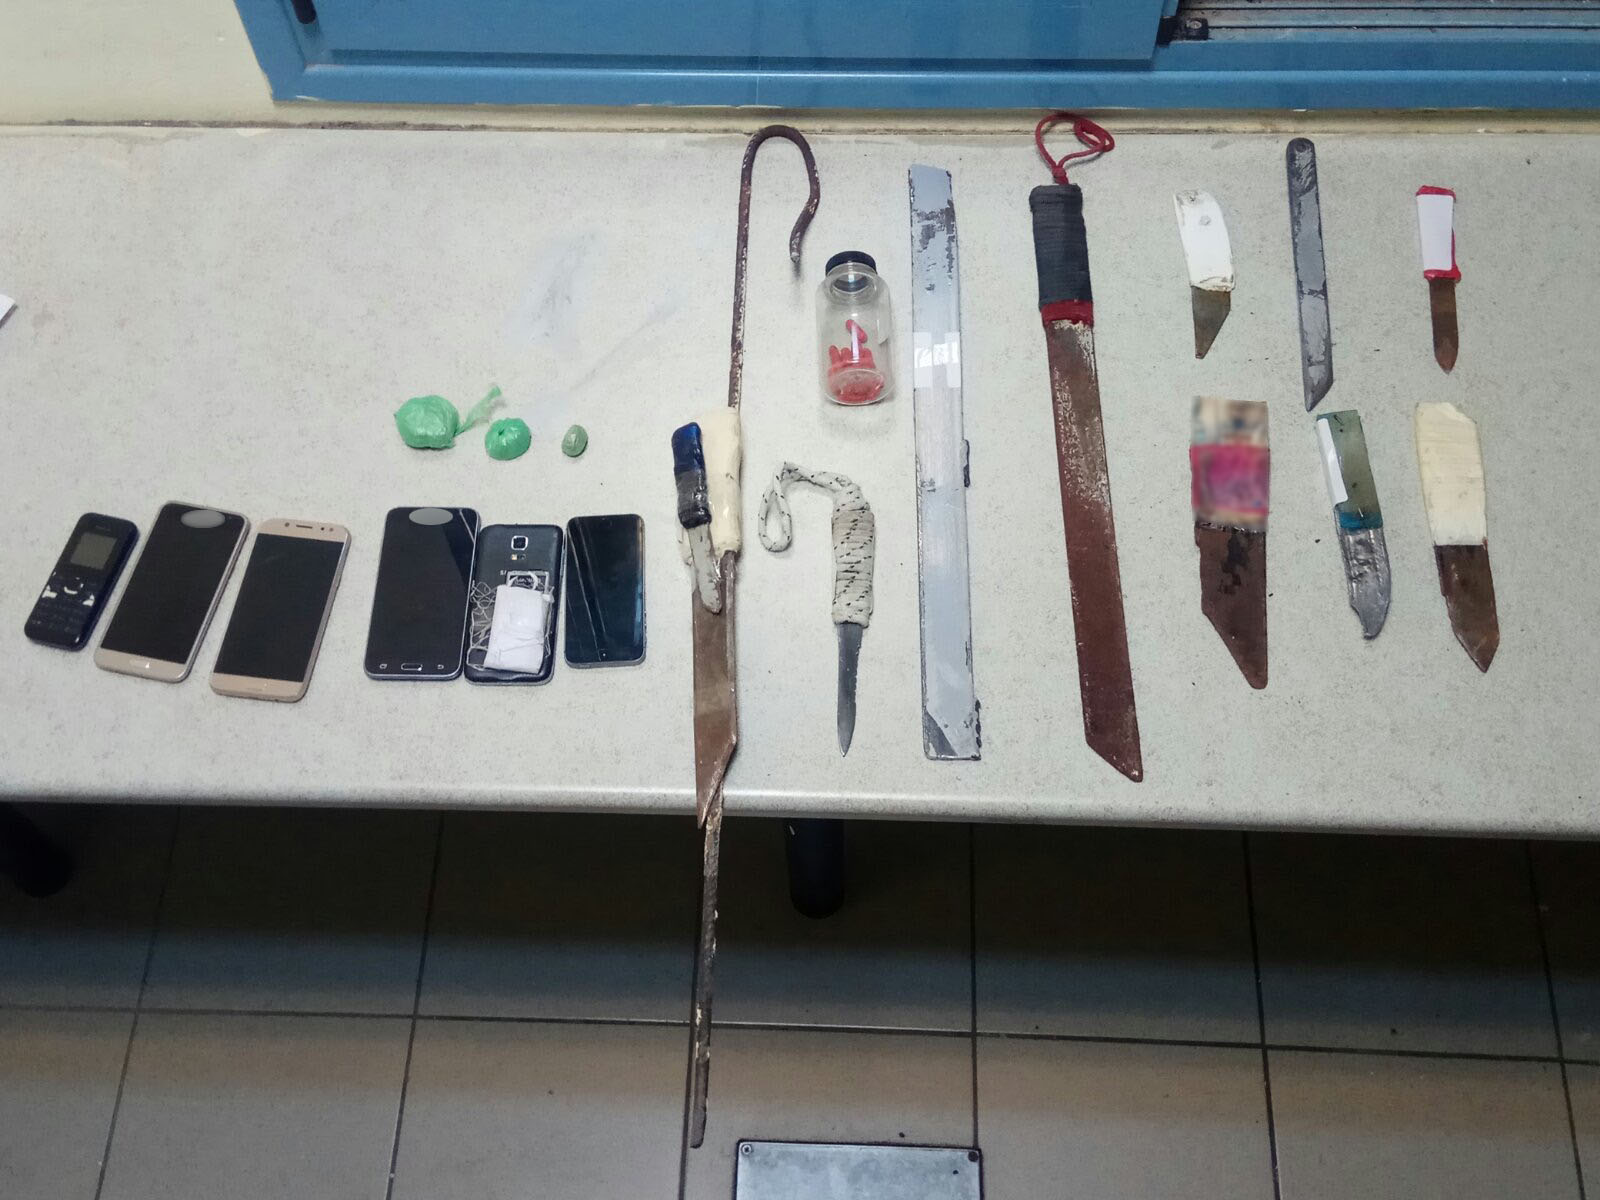 Φυλακές Δομοκού: Ηρωίνη, μαχαίρια και κινητά τηλέφωνα σε κελιά (pics)